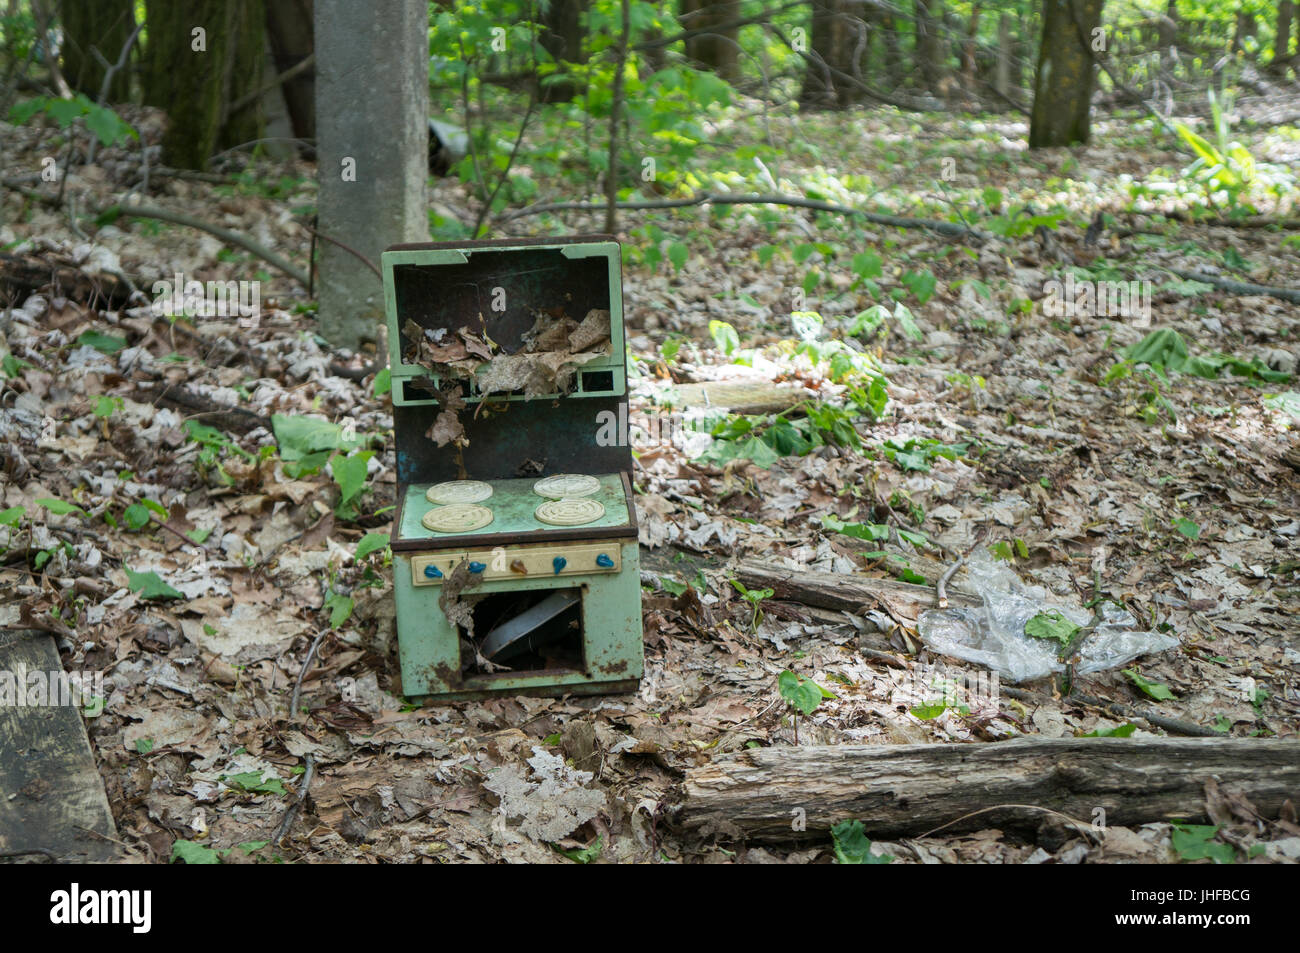 Un giocattolo rotto è situata nella parte anteriore di un asilo nido abbandonati di Chernobyl Foto Stock